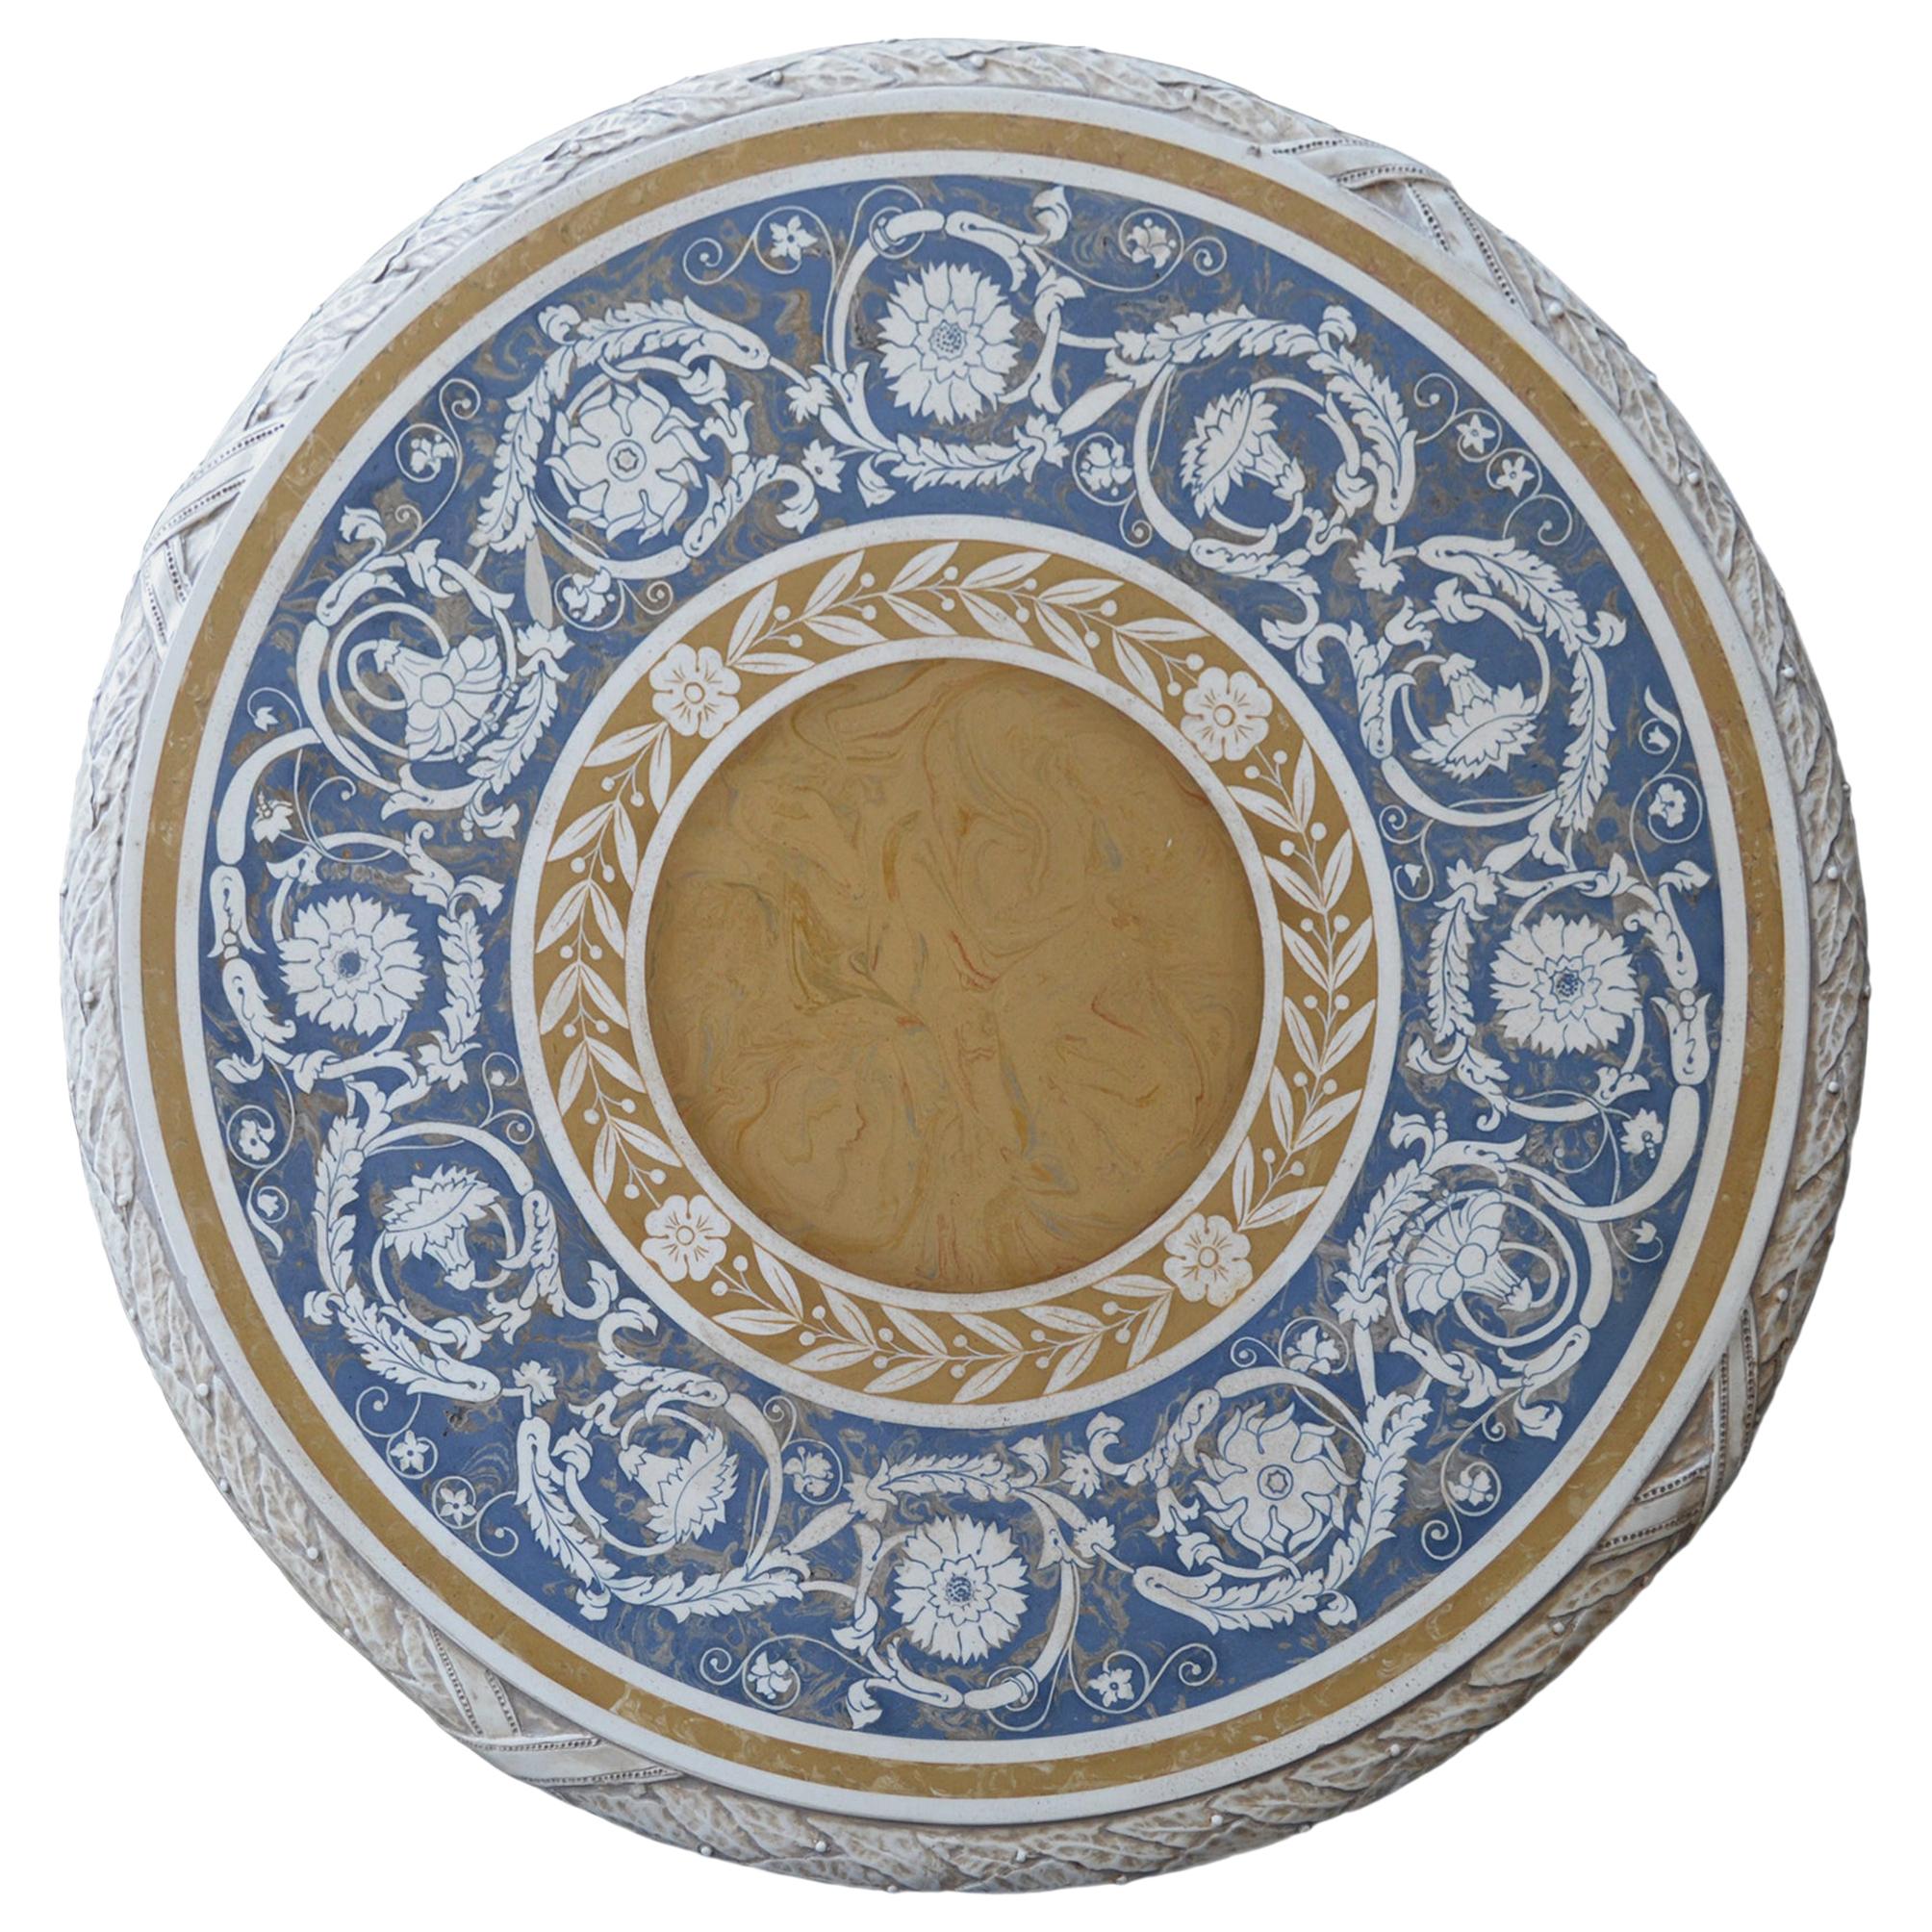 Table d'appoint en scagliola bleue avec base en métal, fabriquée à la main en Italie par Cupioli, disponible